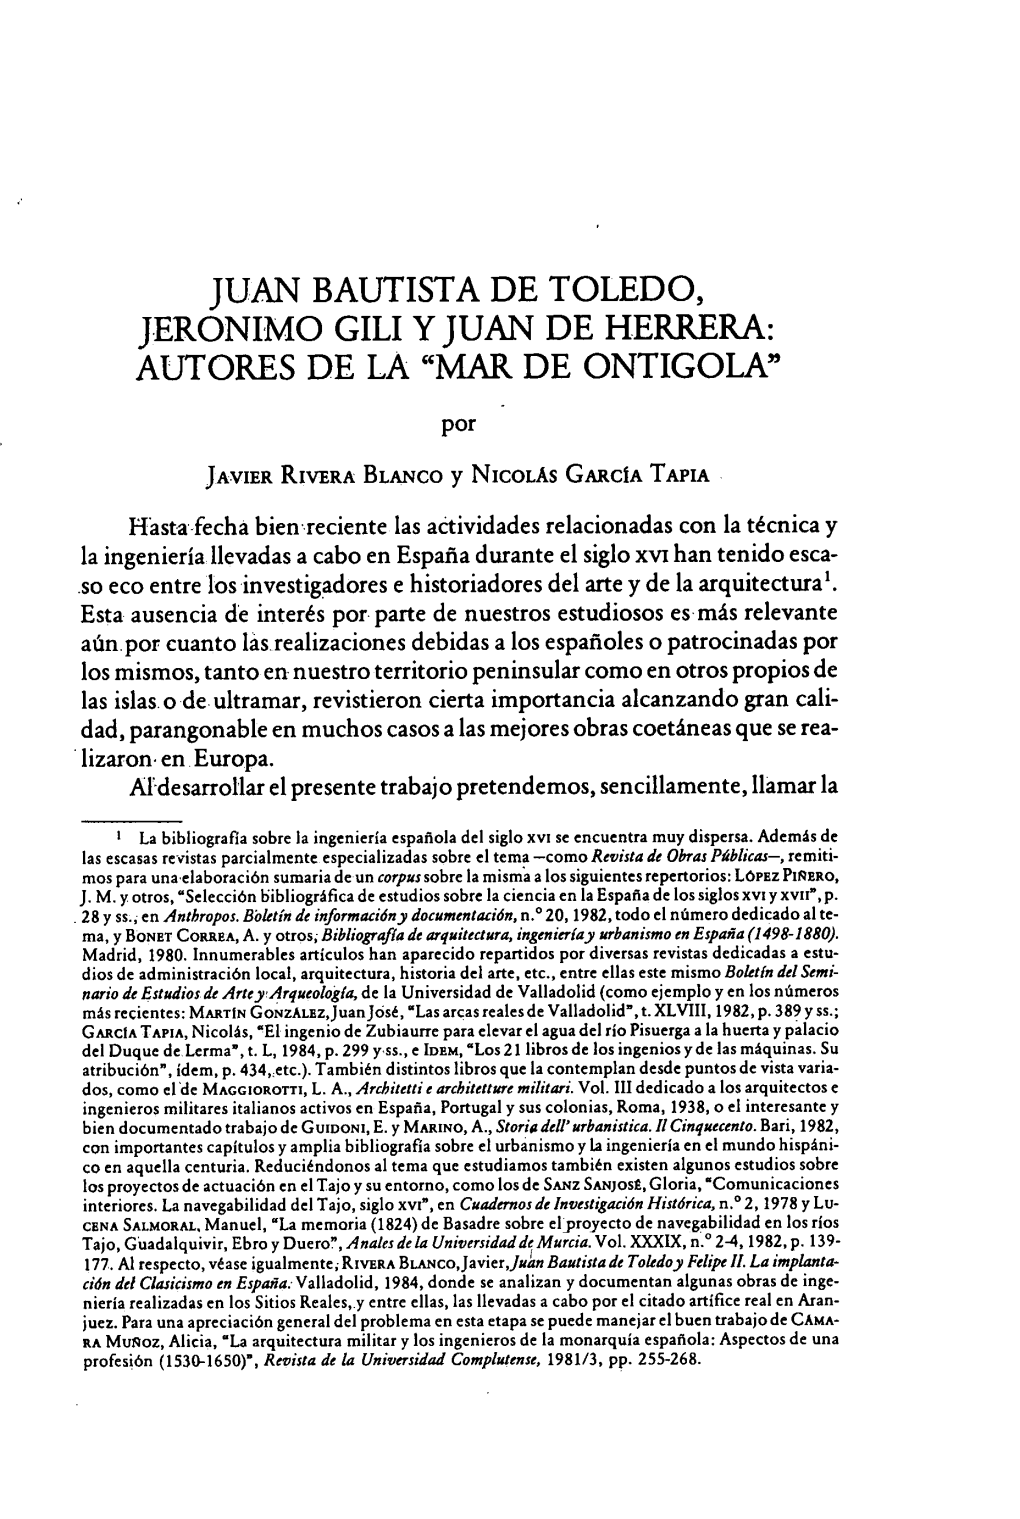 JUAN BAUTISTA DE TOLEDO, JERONIMO GILI Y JUAN DE HERRERA: AUTORES DE LA "MAR DE ONTIGOLA" Por